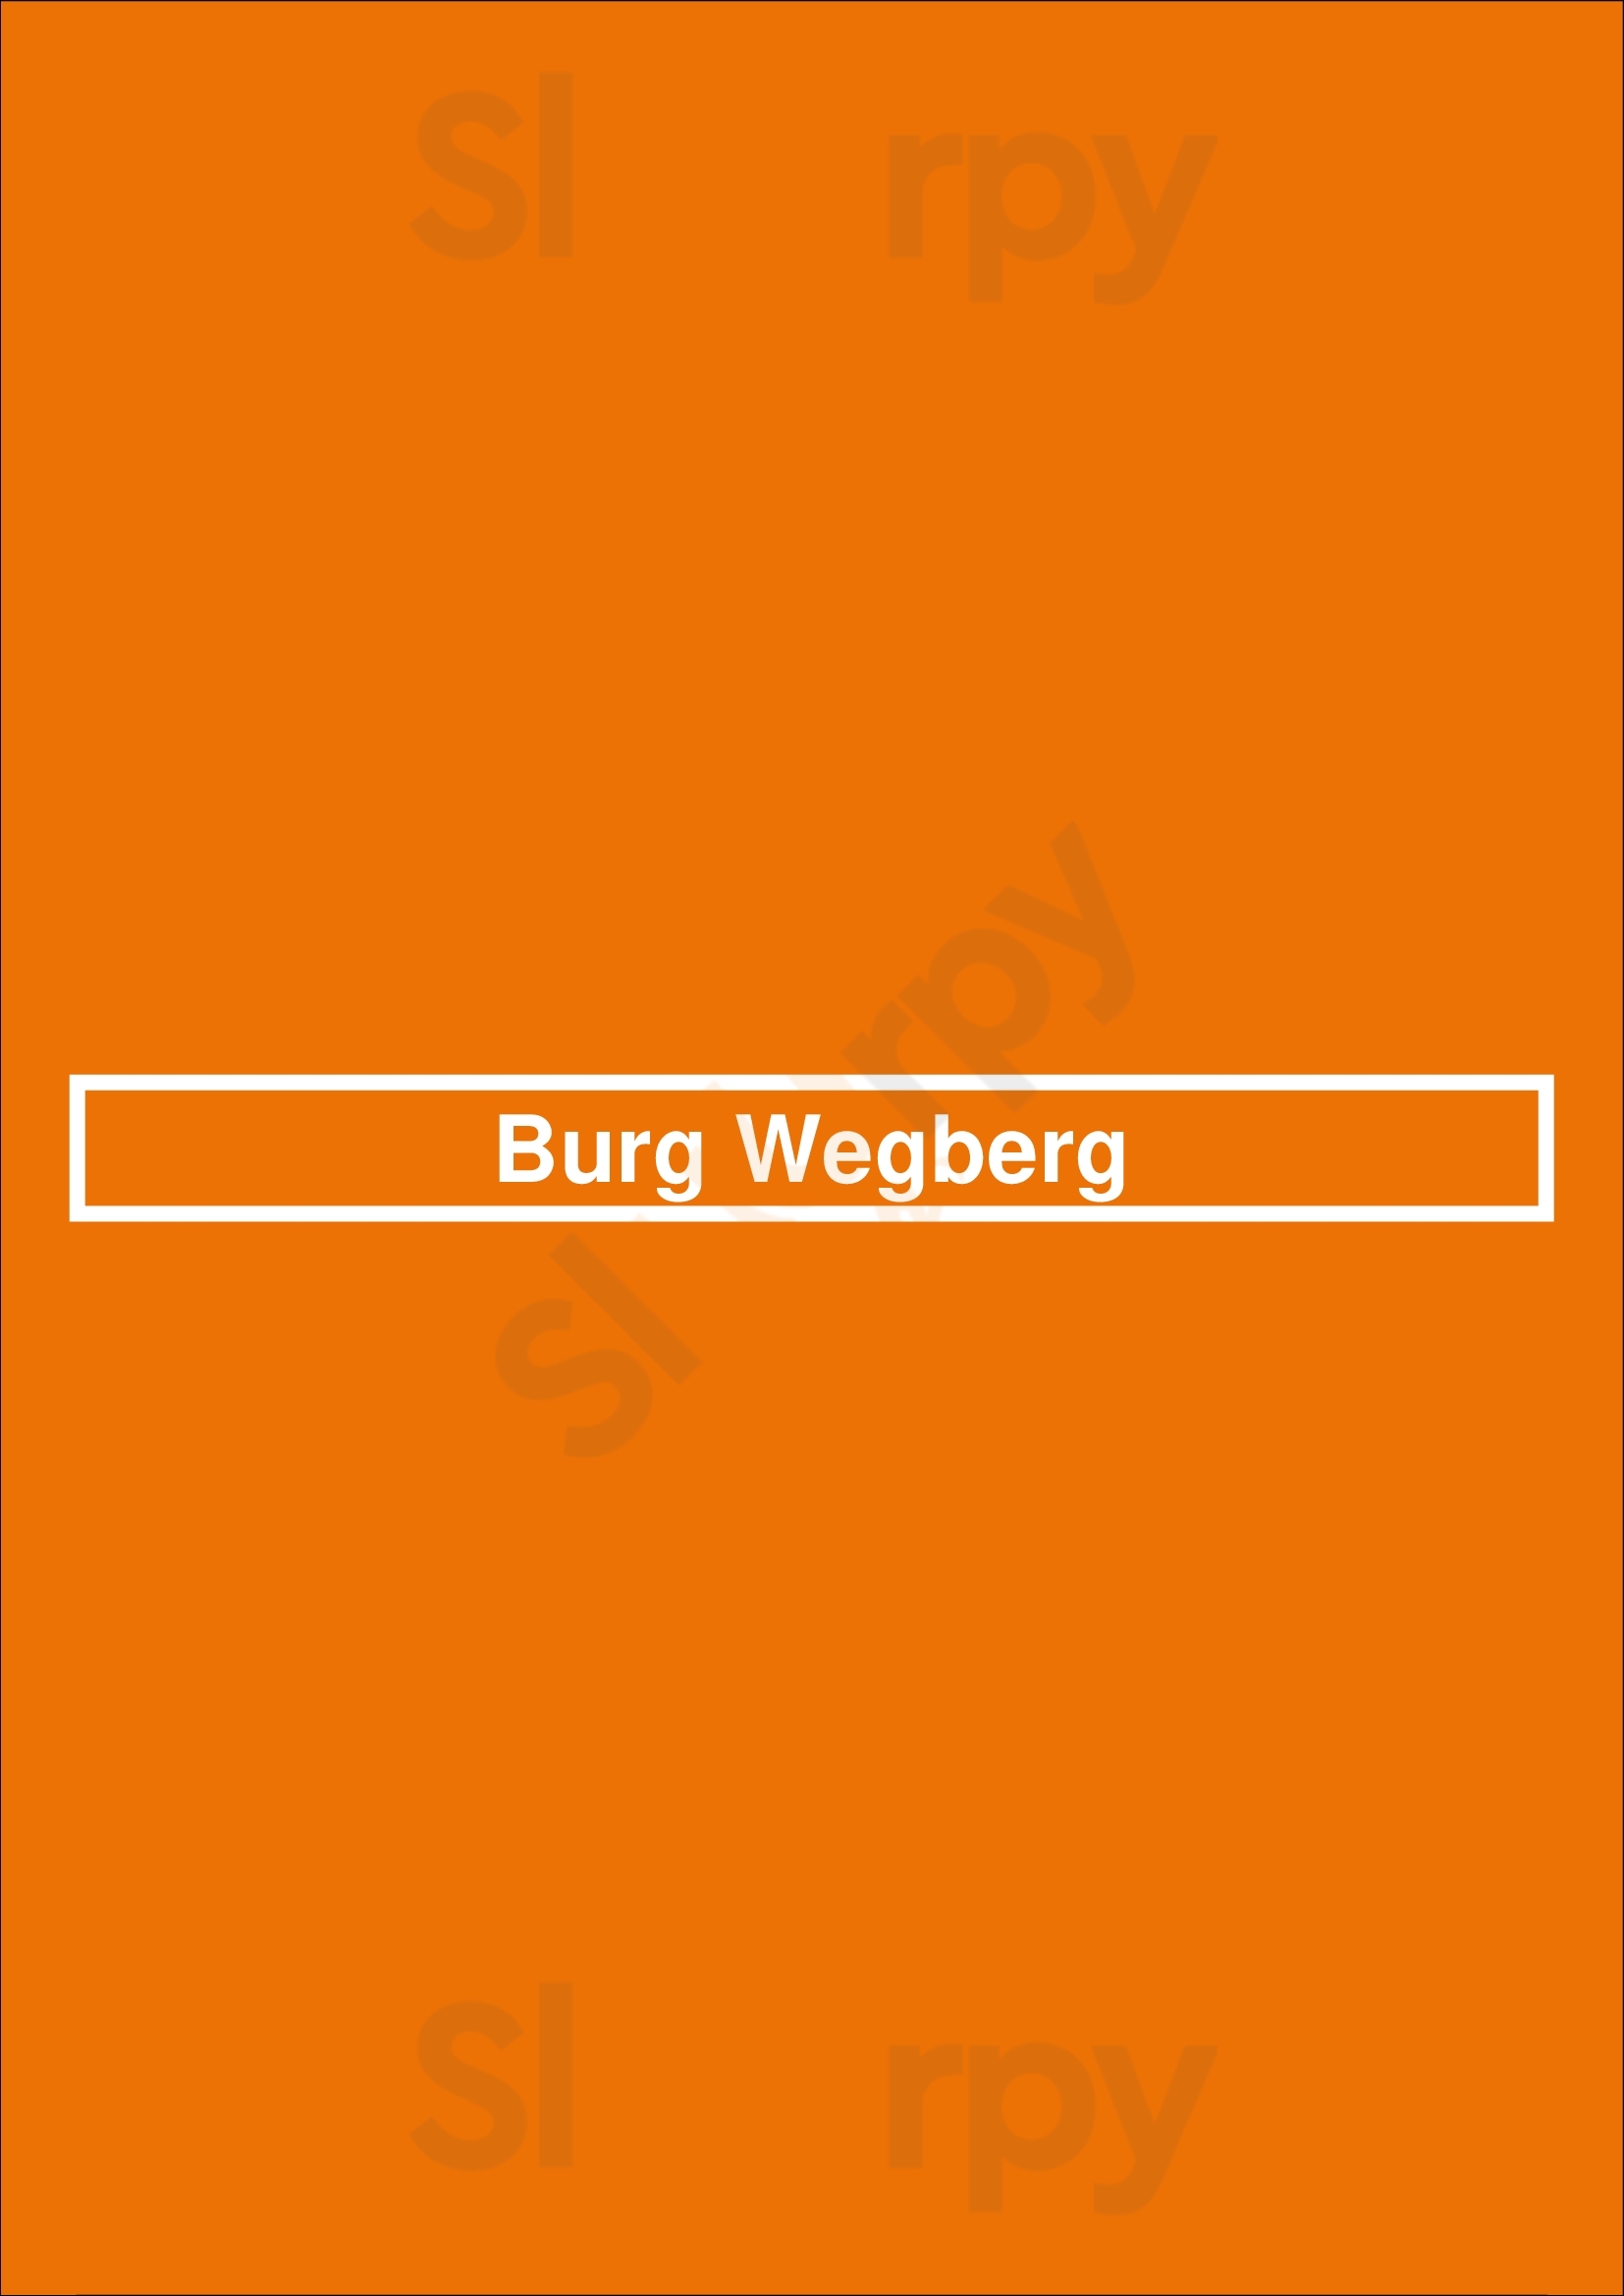 Burg Wegberg Hotel Und Eventlocation Wegberg Menu - 1